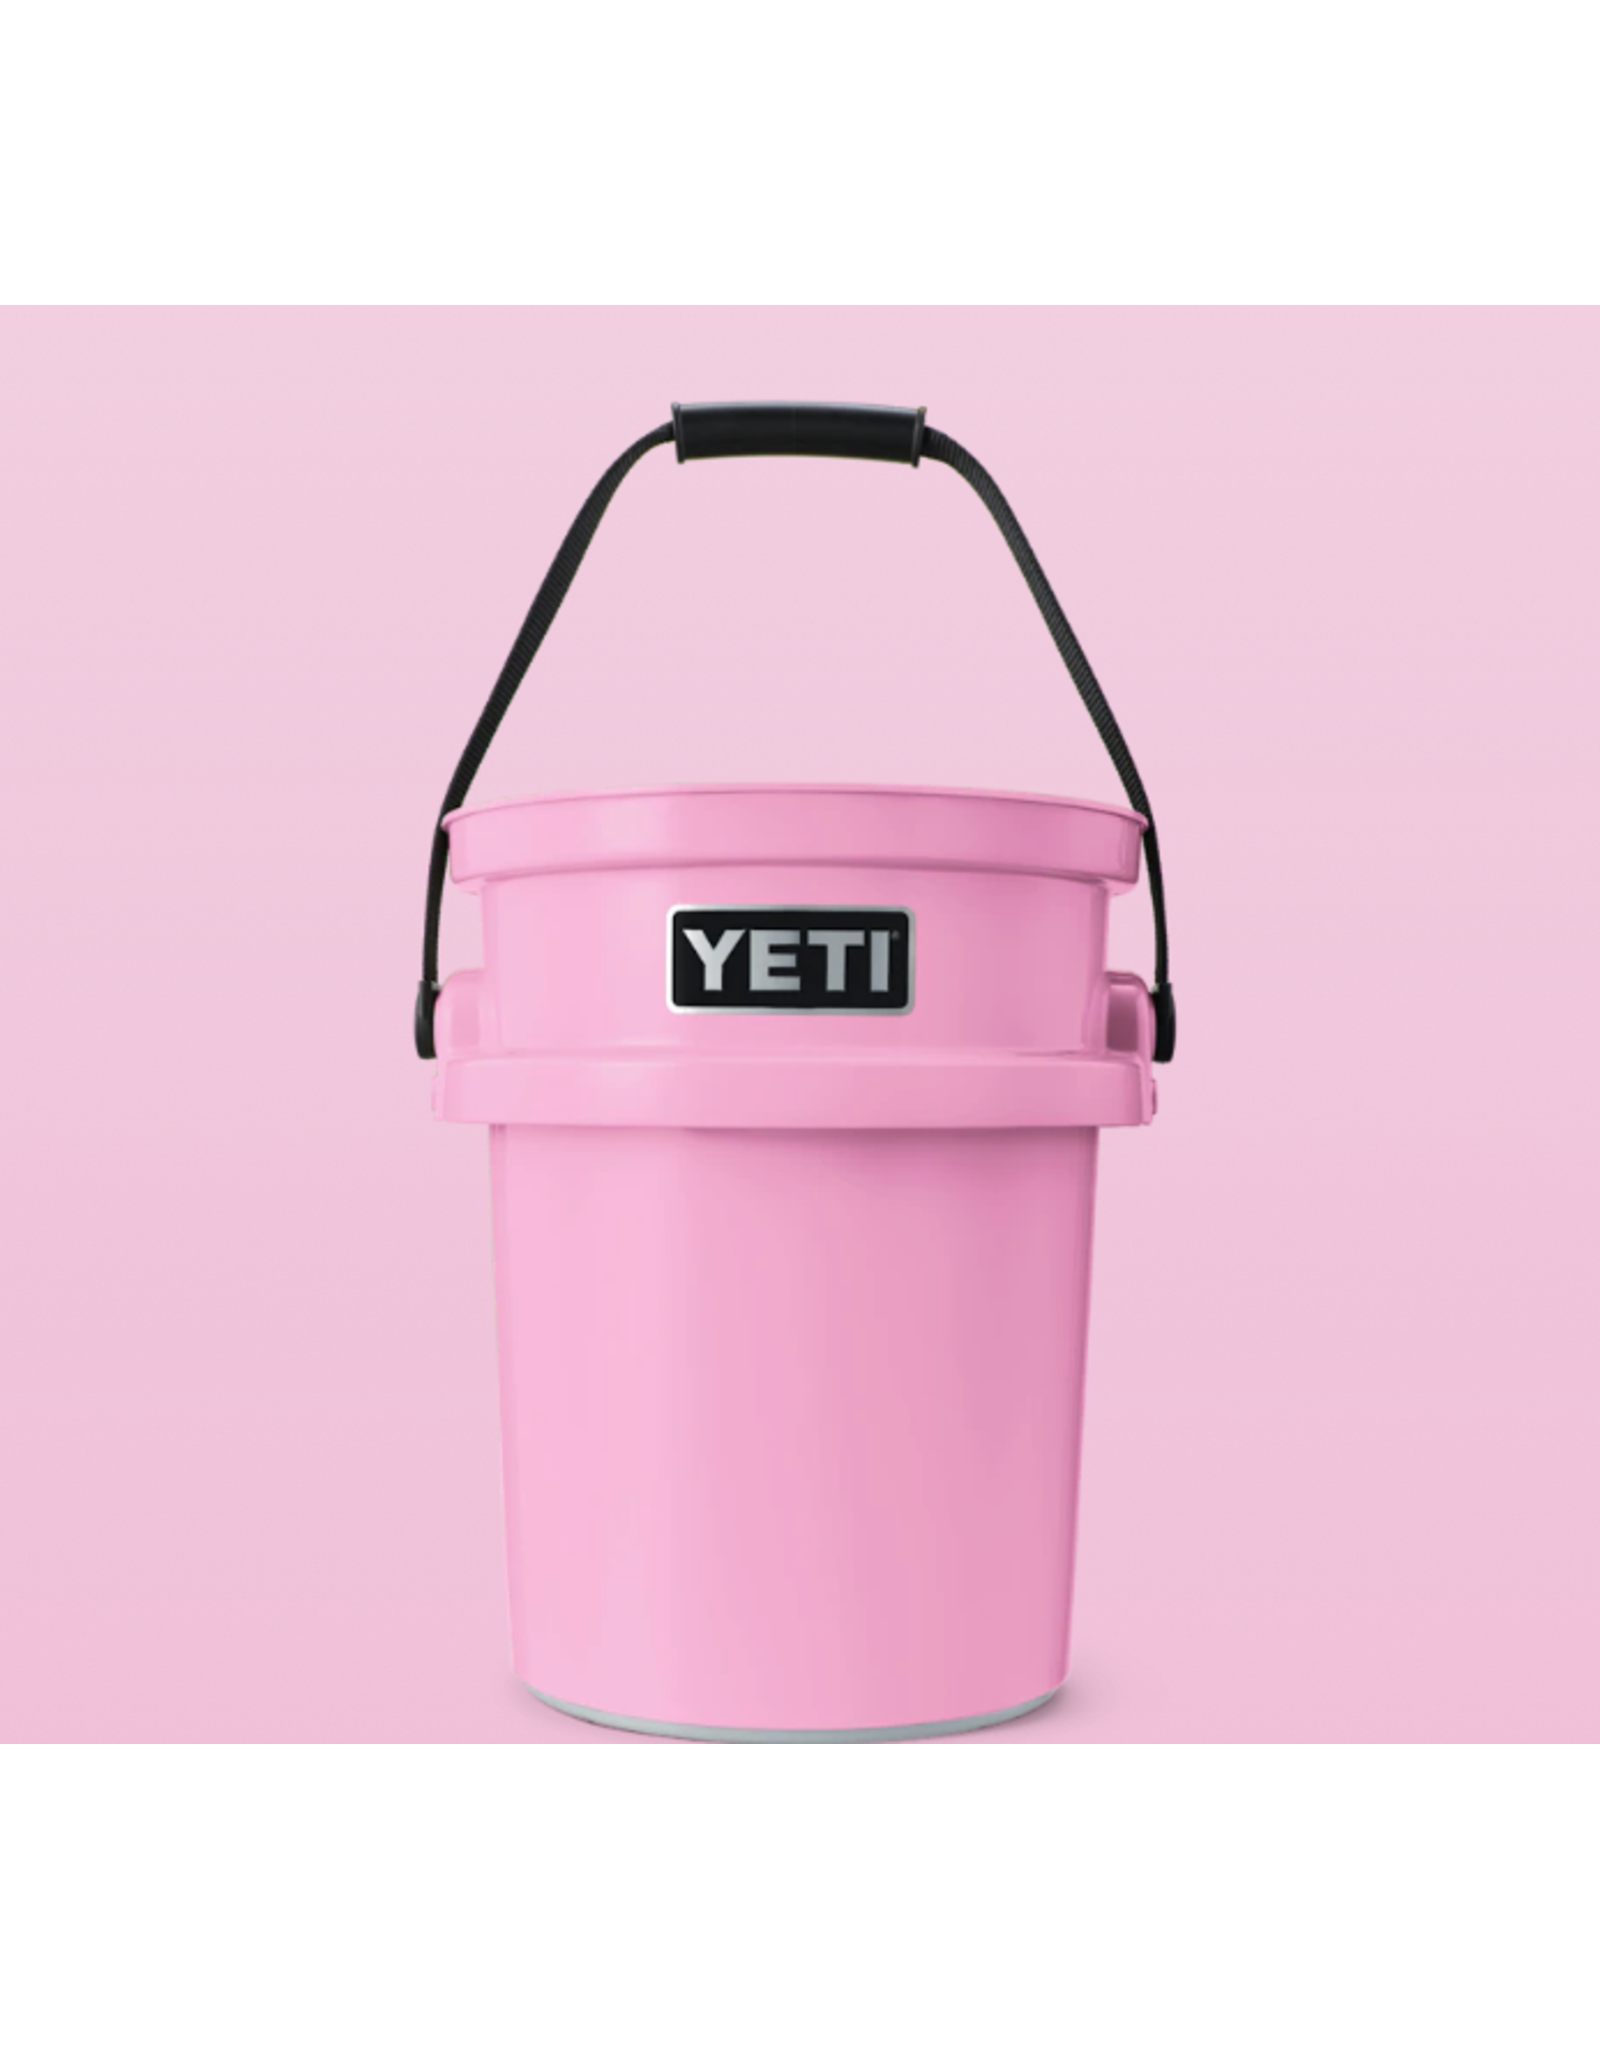 Loadout Bucket Power Pink